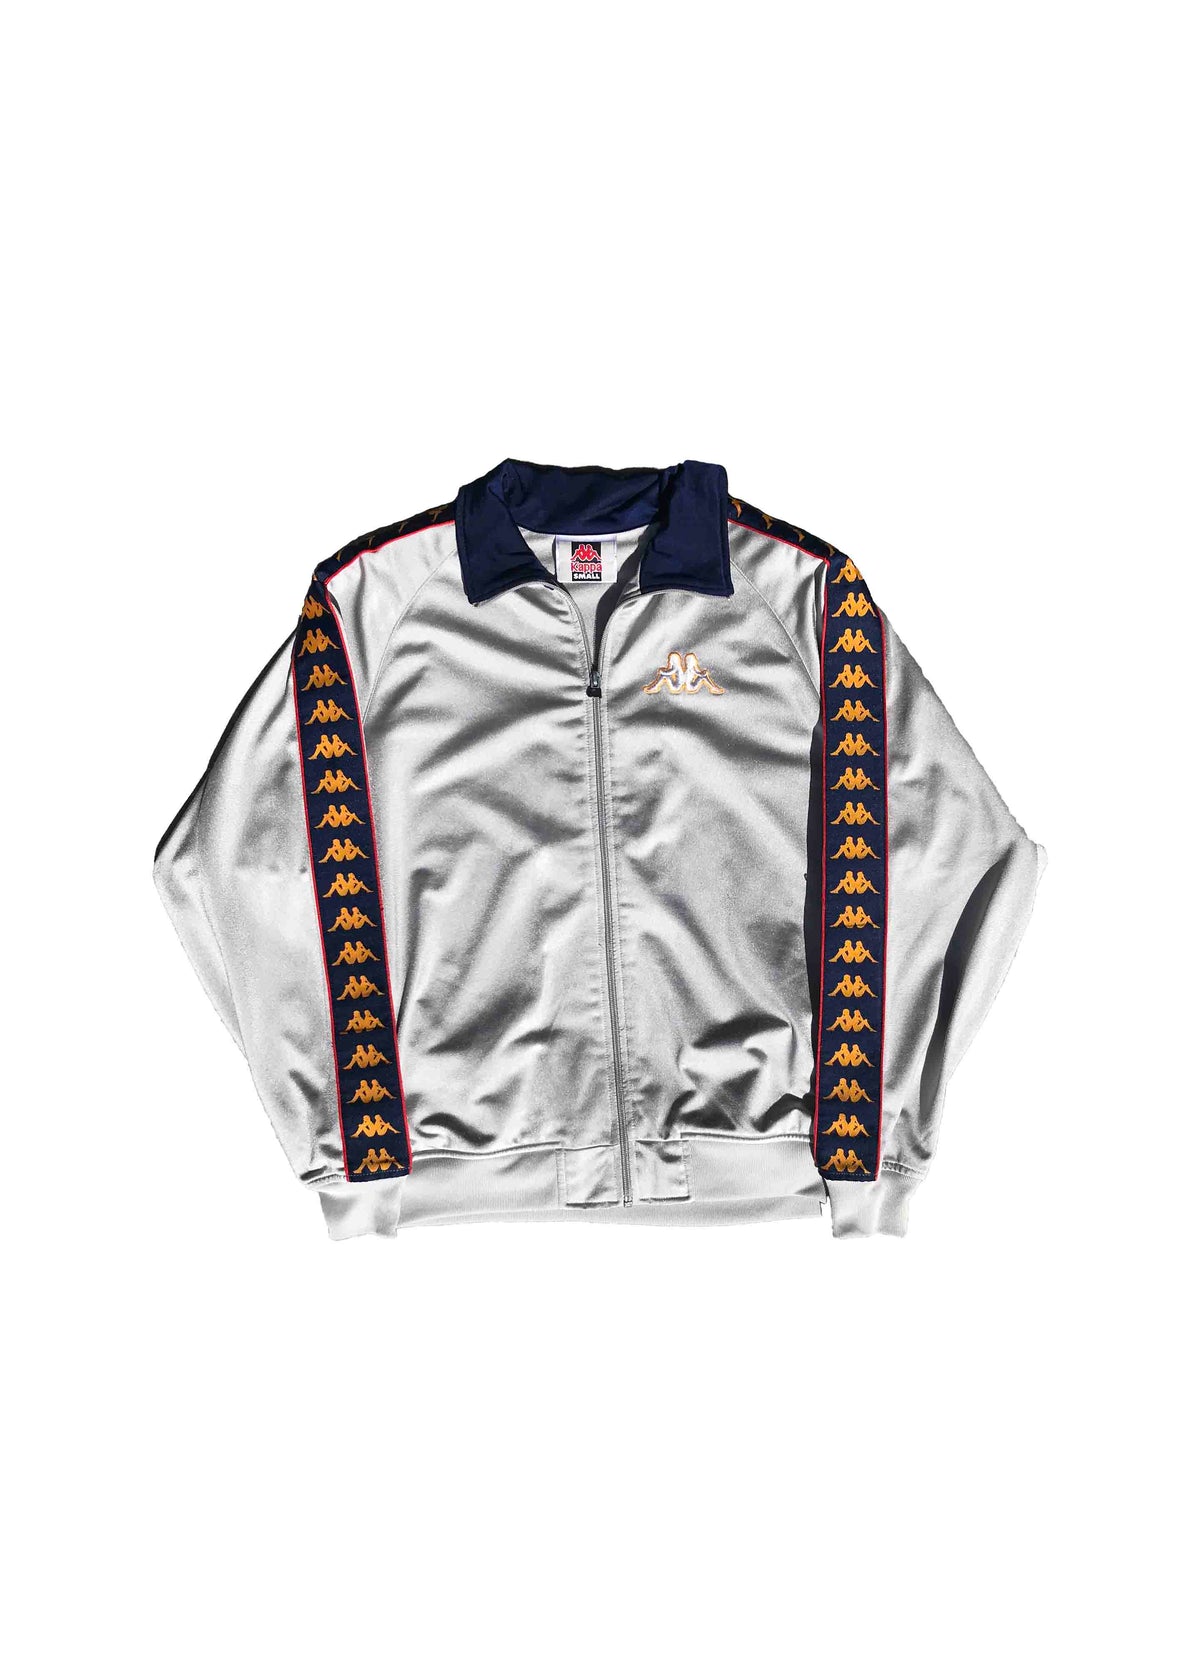 kappa navy track jacket